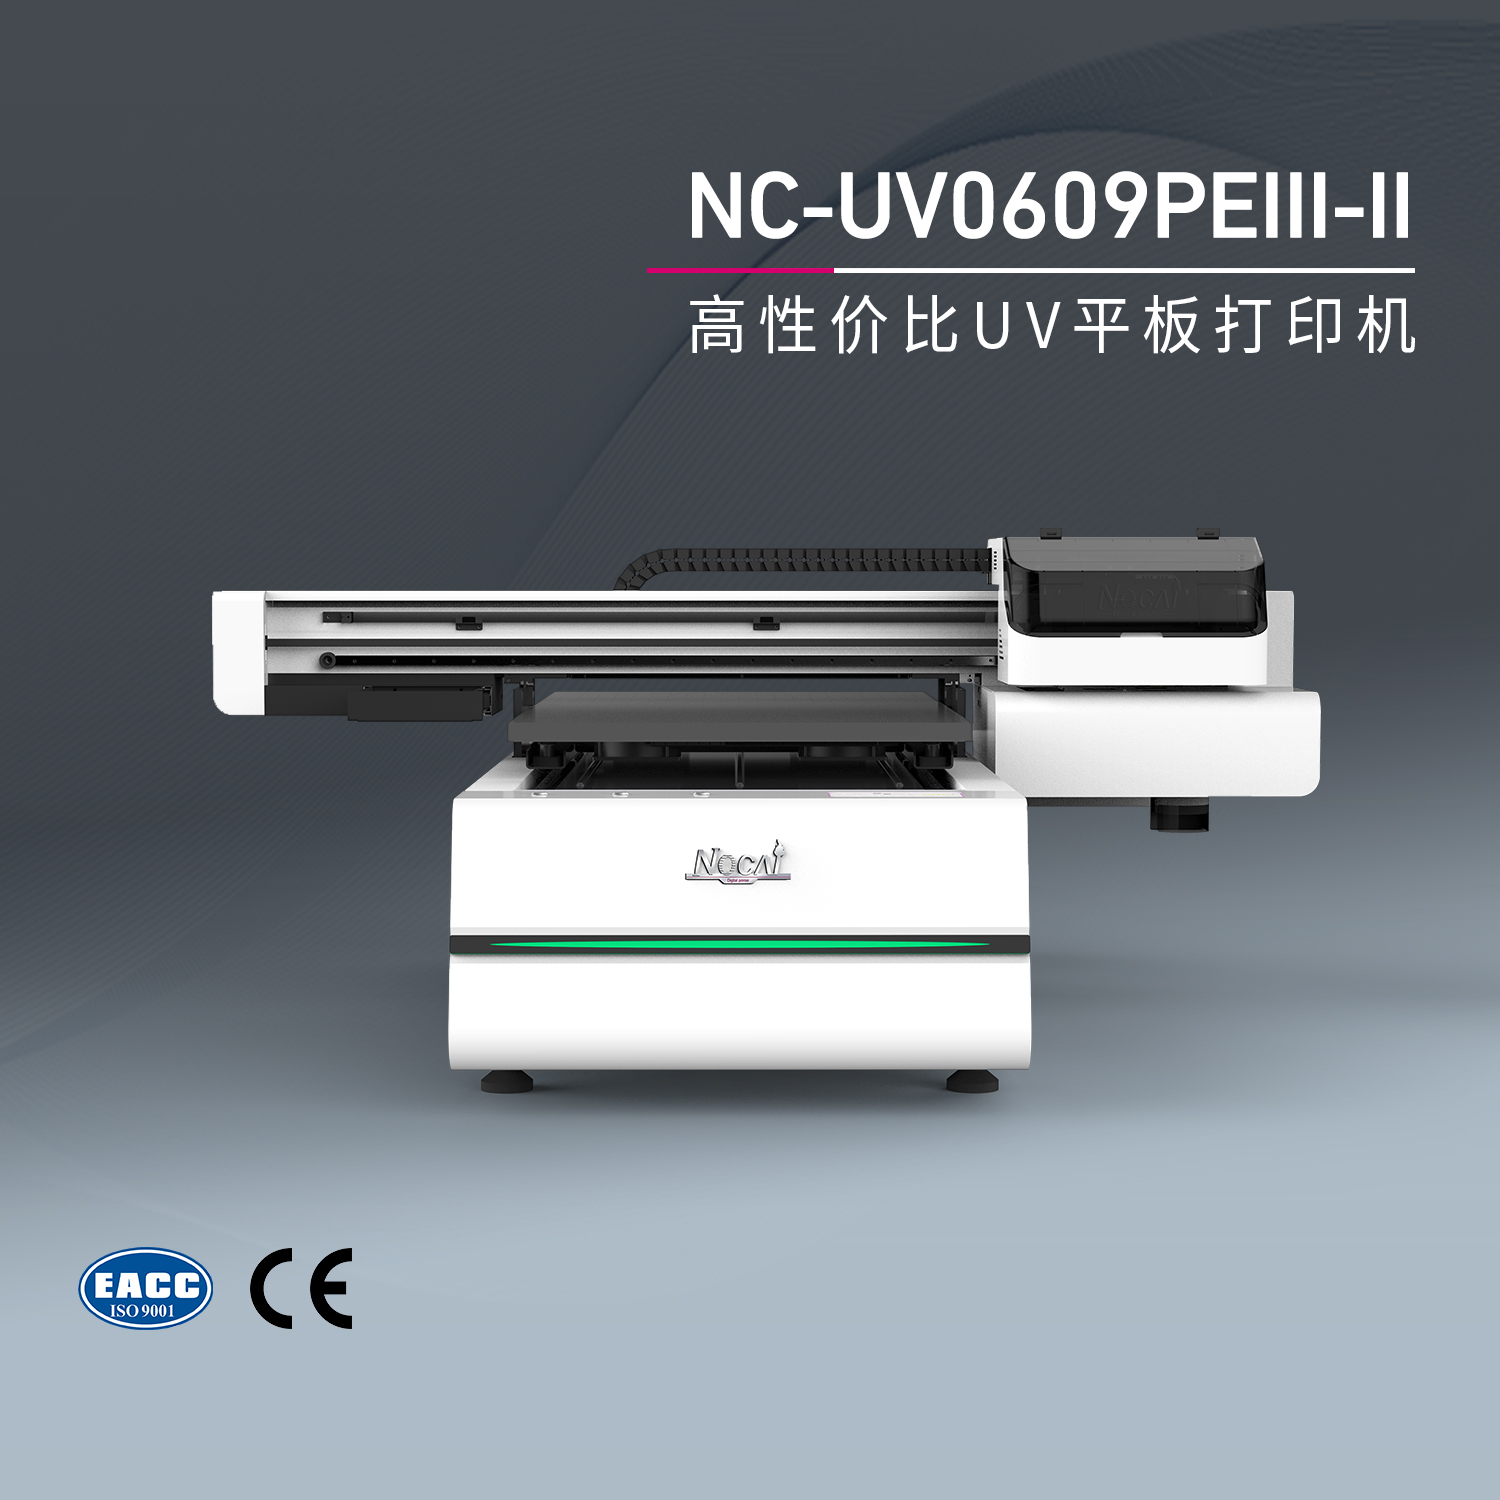 NC-UV0609PEⅢ-Ⅱ 小型UV平板打印机